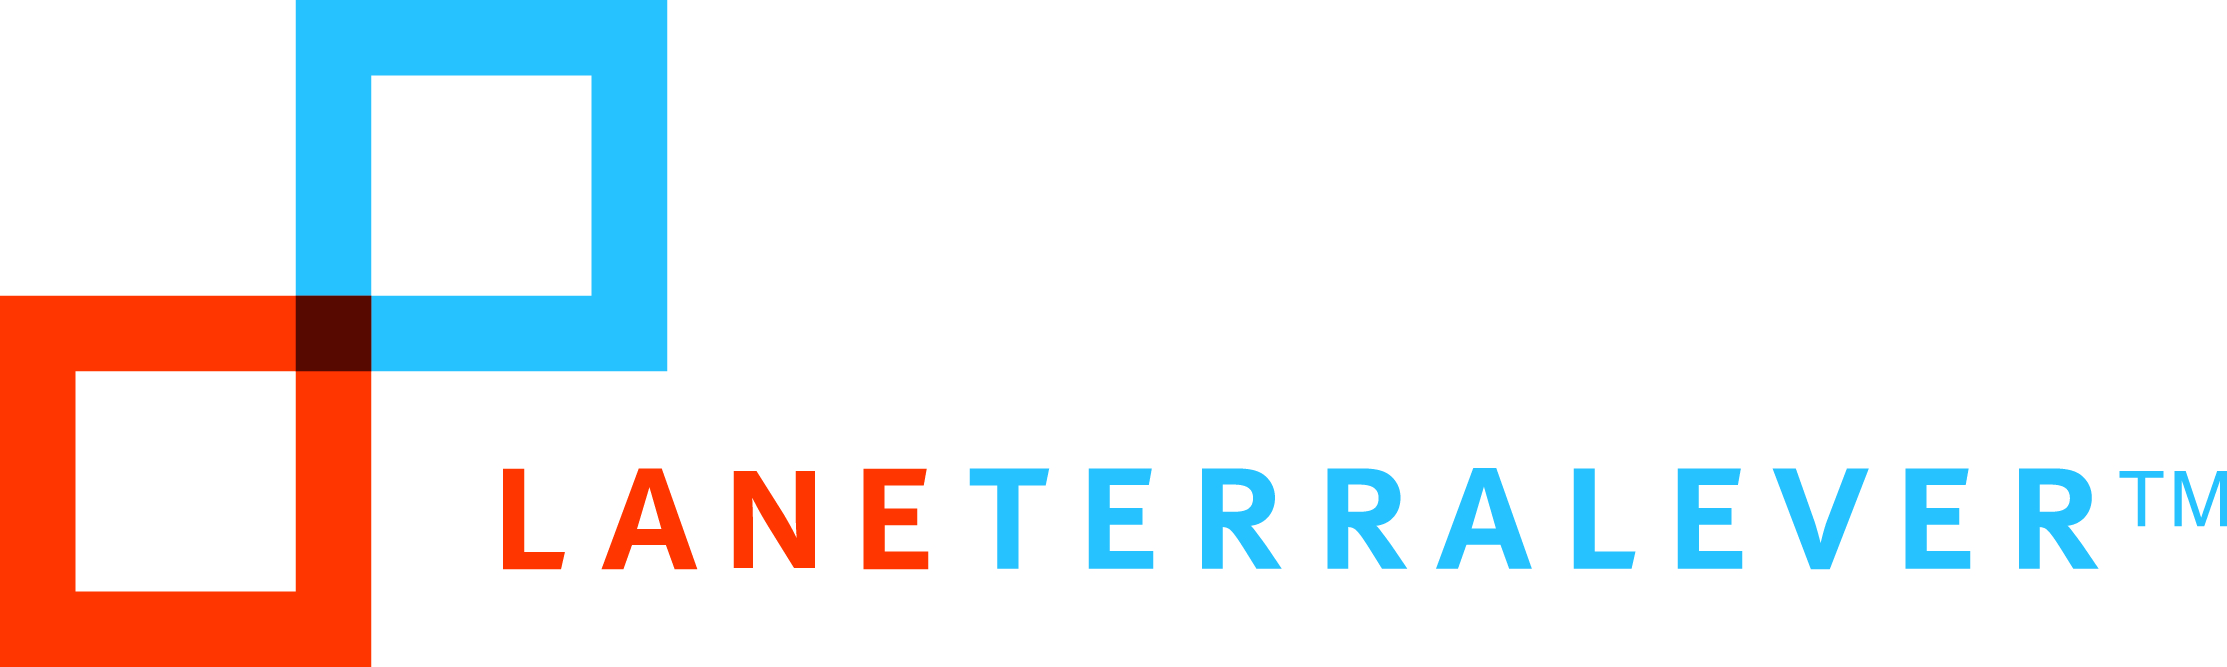 LaneTerralever Logo